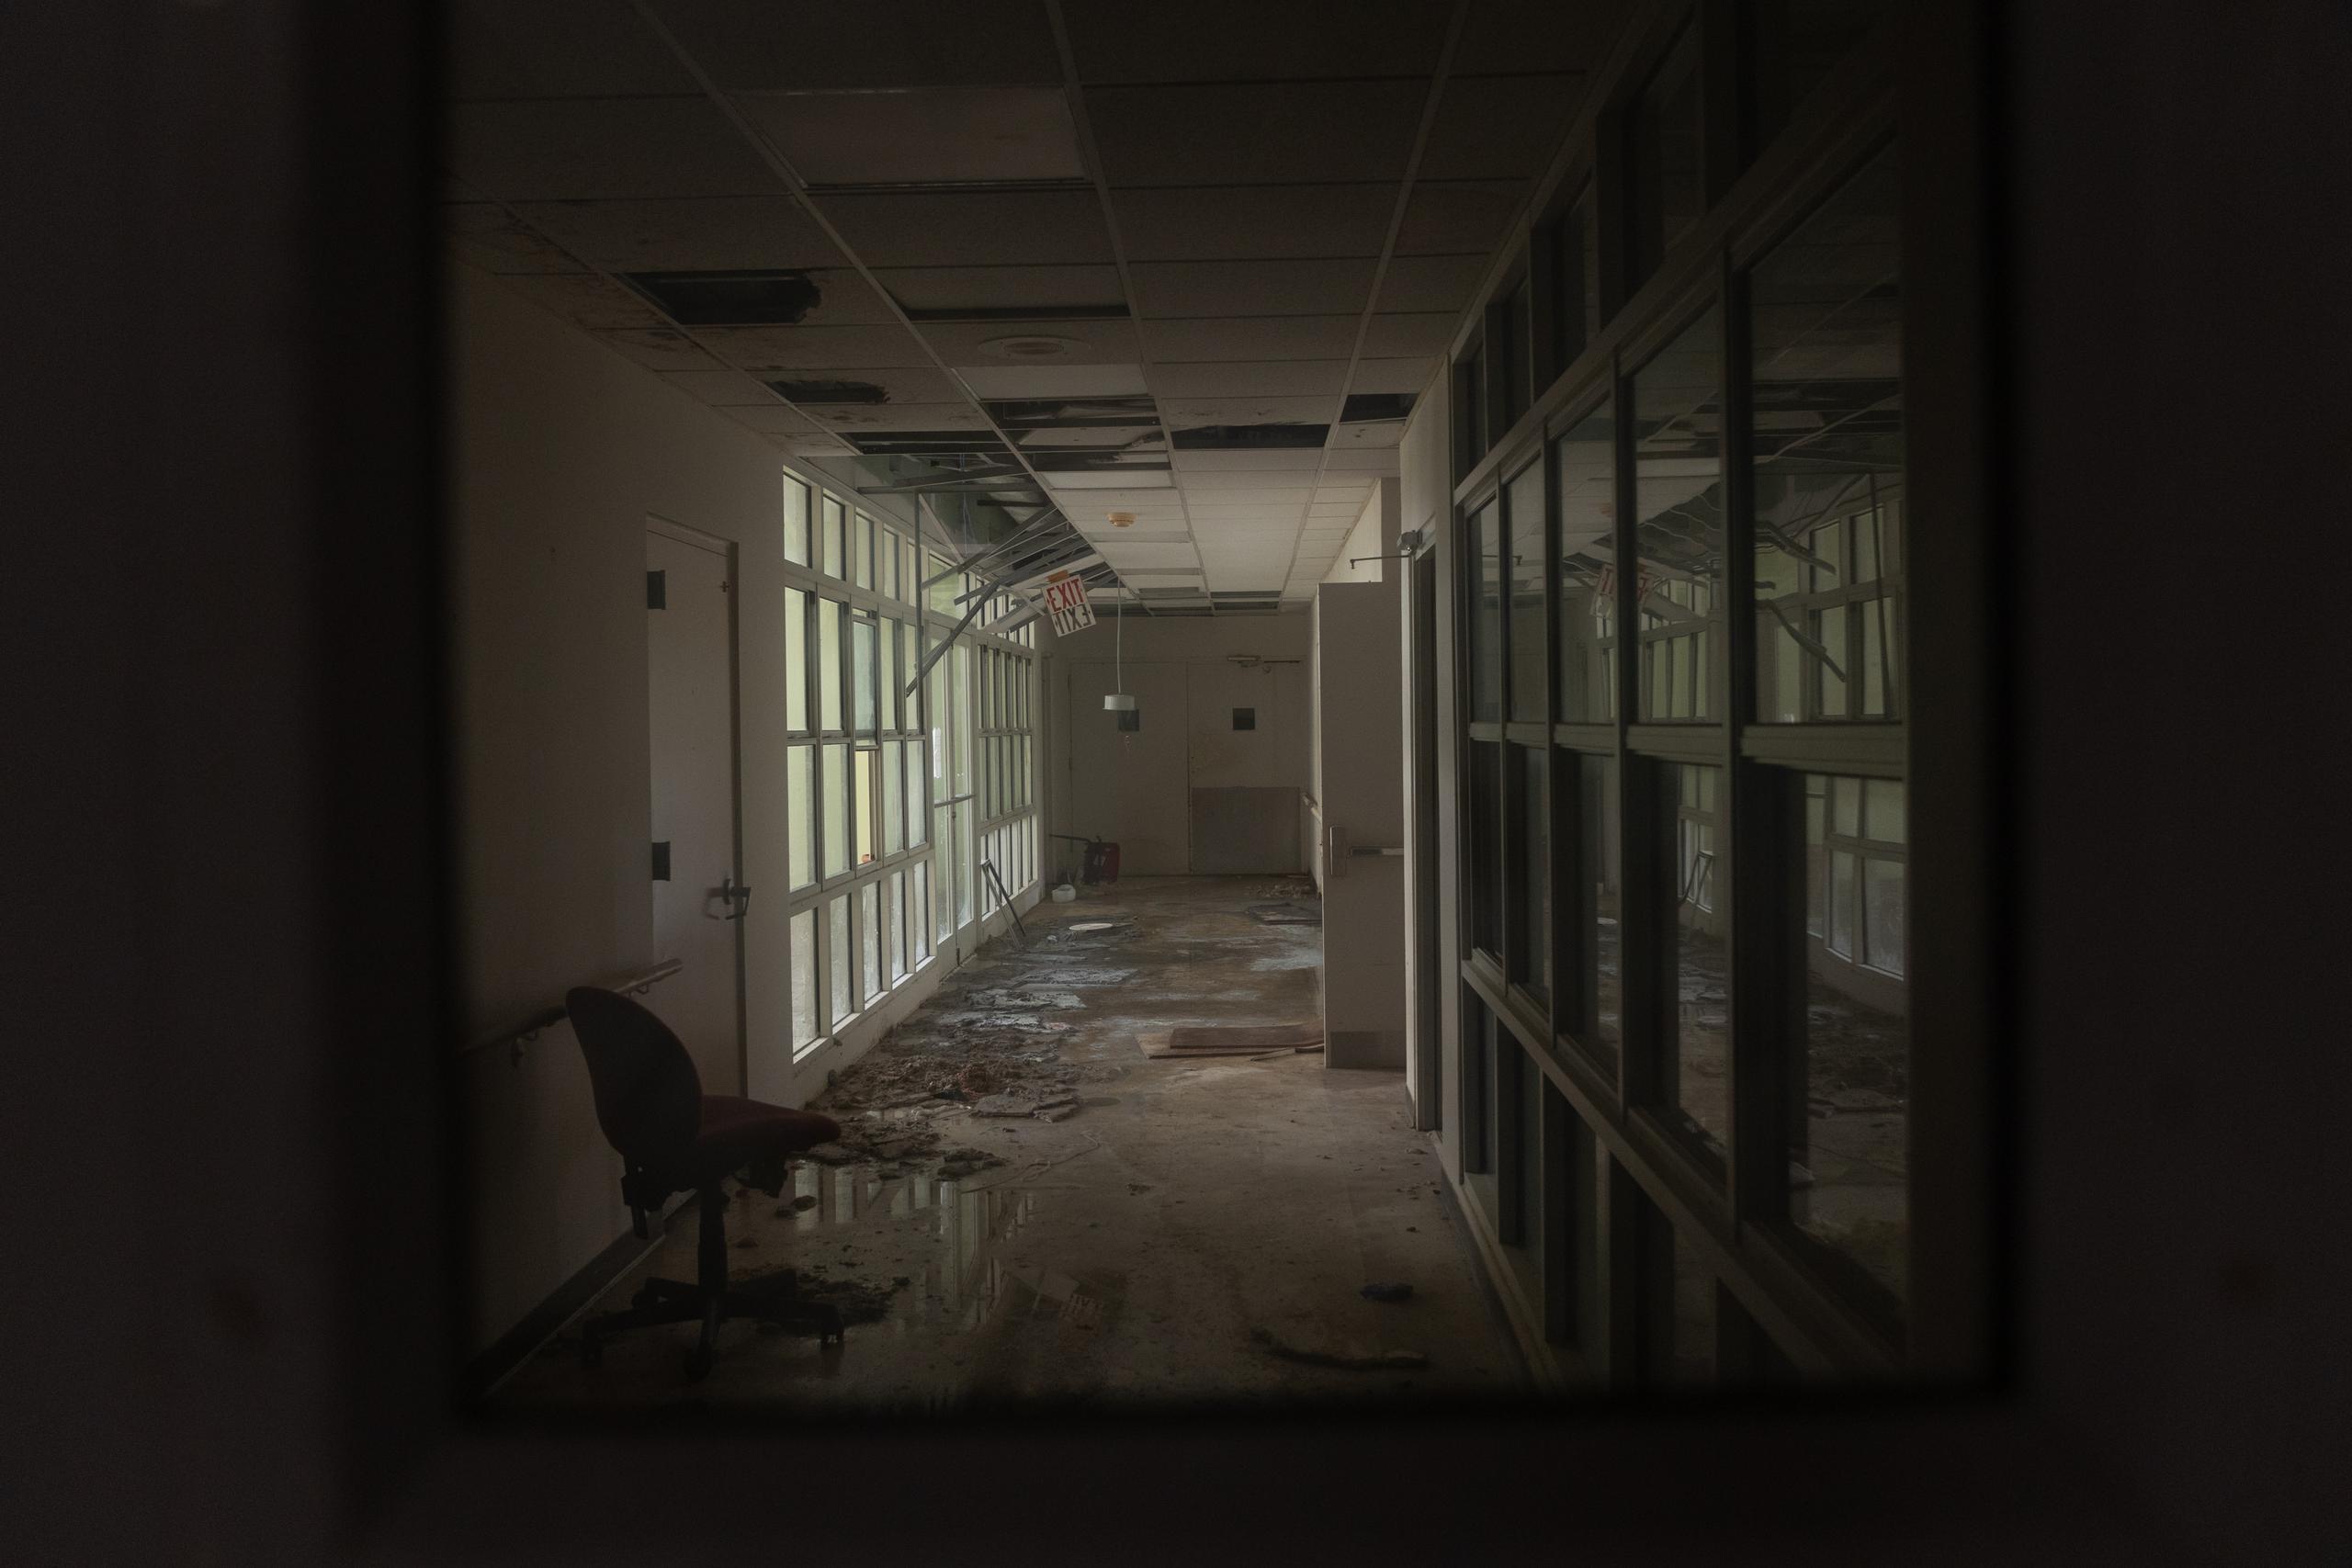 El llamado "hospital viejo" de Rincón lleva seis años cerrado y abandonado.